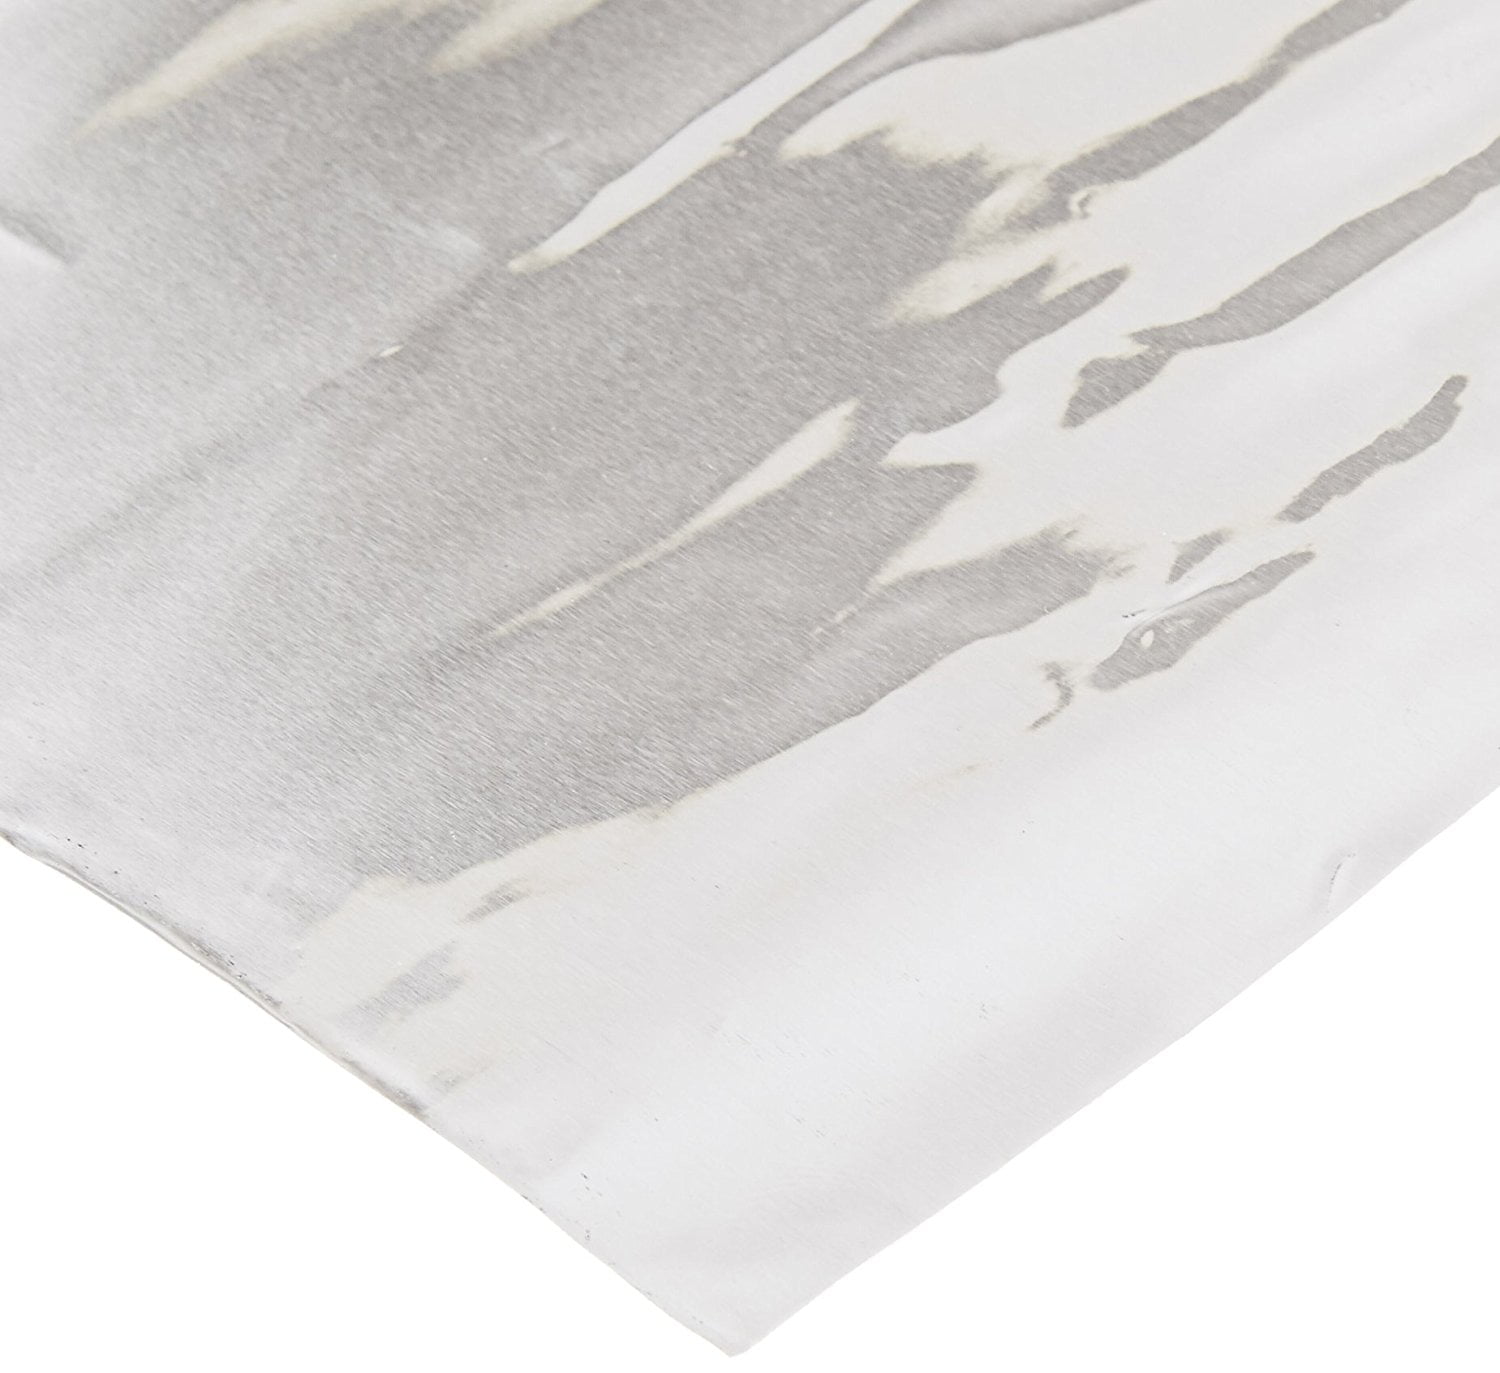 12 inches x 25 feet 36 Gauge St Louis Crafts Aluminum Metal Foil Sheet Roll